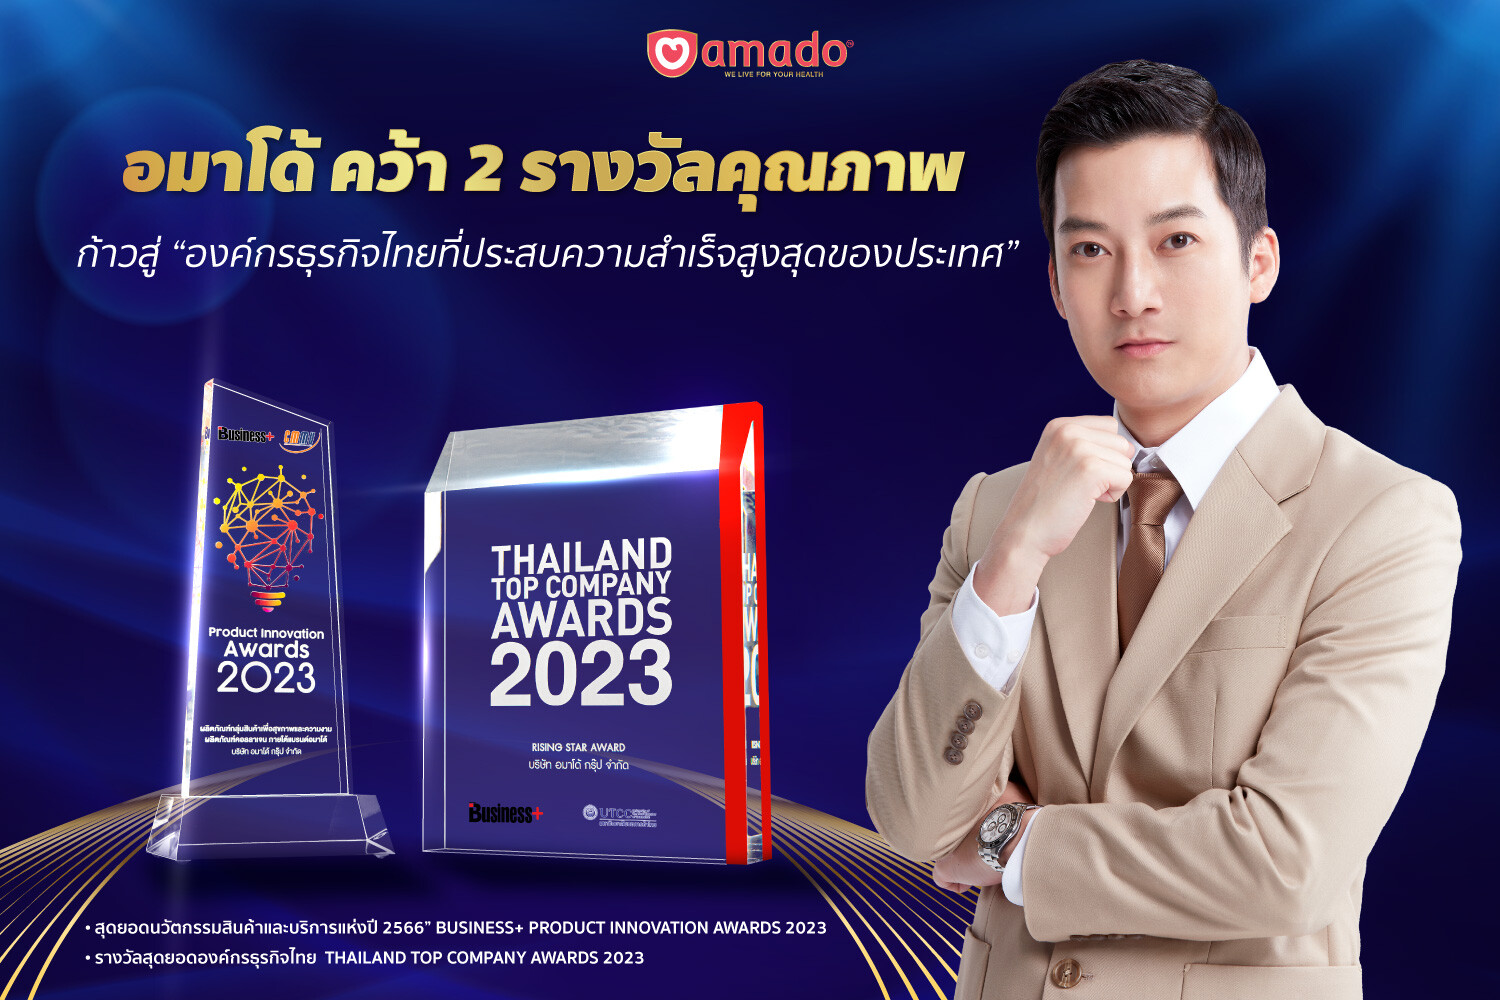 อมาโด้คว้า 2 รางวัลคุณภาพ ก้าวสู่ "องค์กรธุรกิจไทยที่ประสบความสำเร็จสูงสุดของประเทศ"